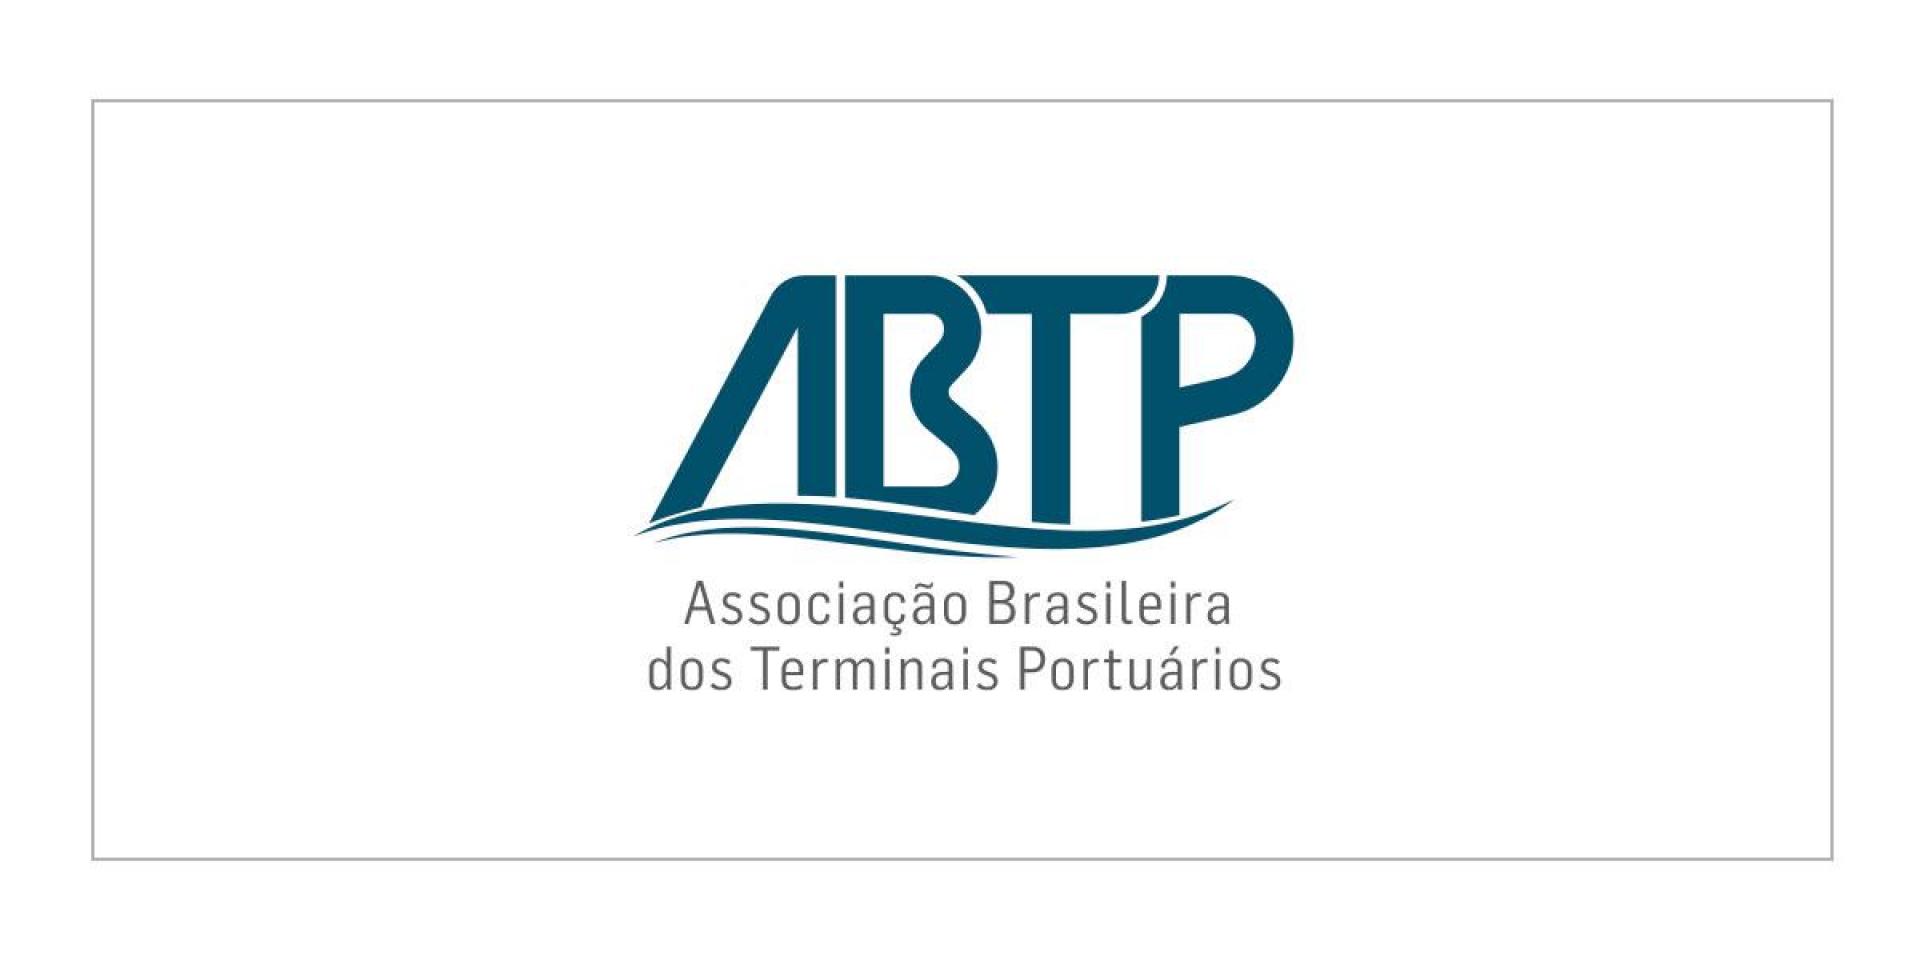 Associação Brasileira dos Terminais Portuários